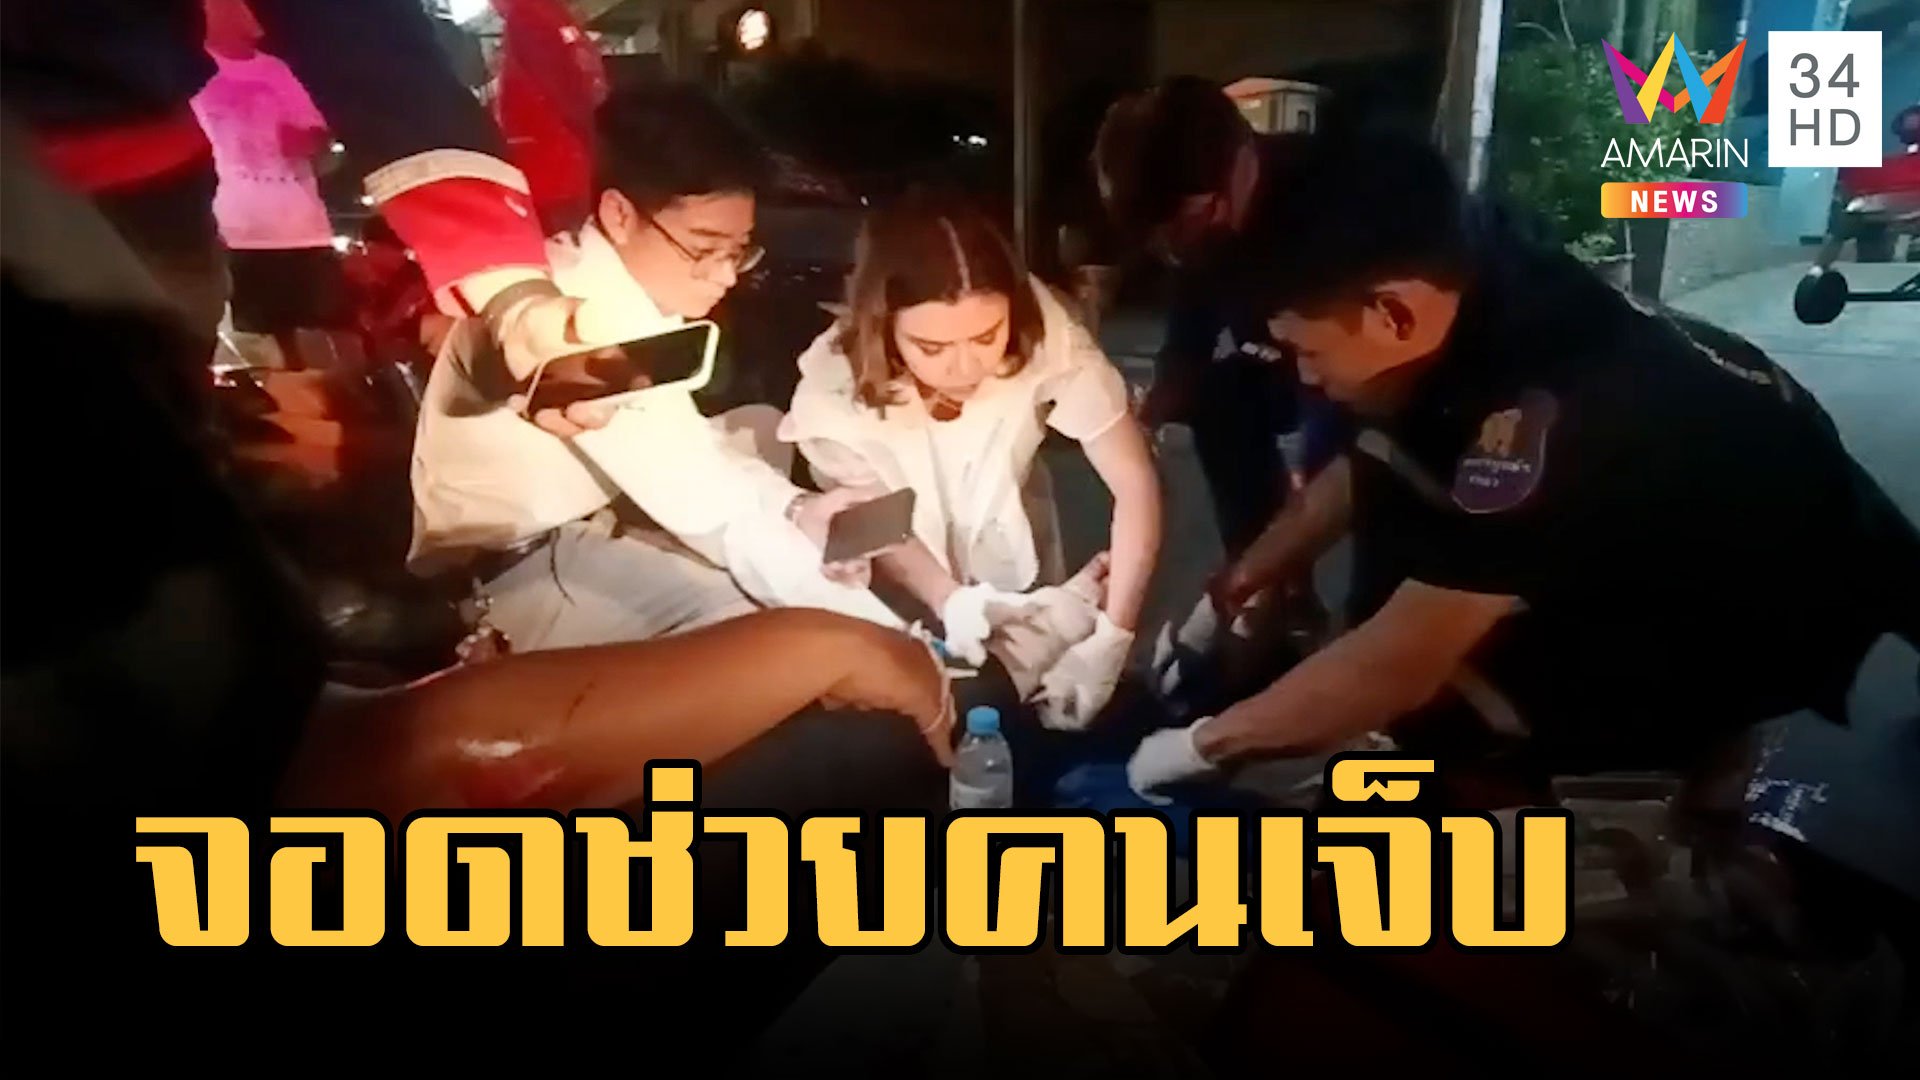 แพทย์หญิงจอดรถช่วยสาวถูก จยย.เฉี่ยวกลางถนน | ข่าวเที่ยงอมรินทร์ | 6 มี.ค. 66 | AMARIN TVHD34